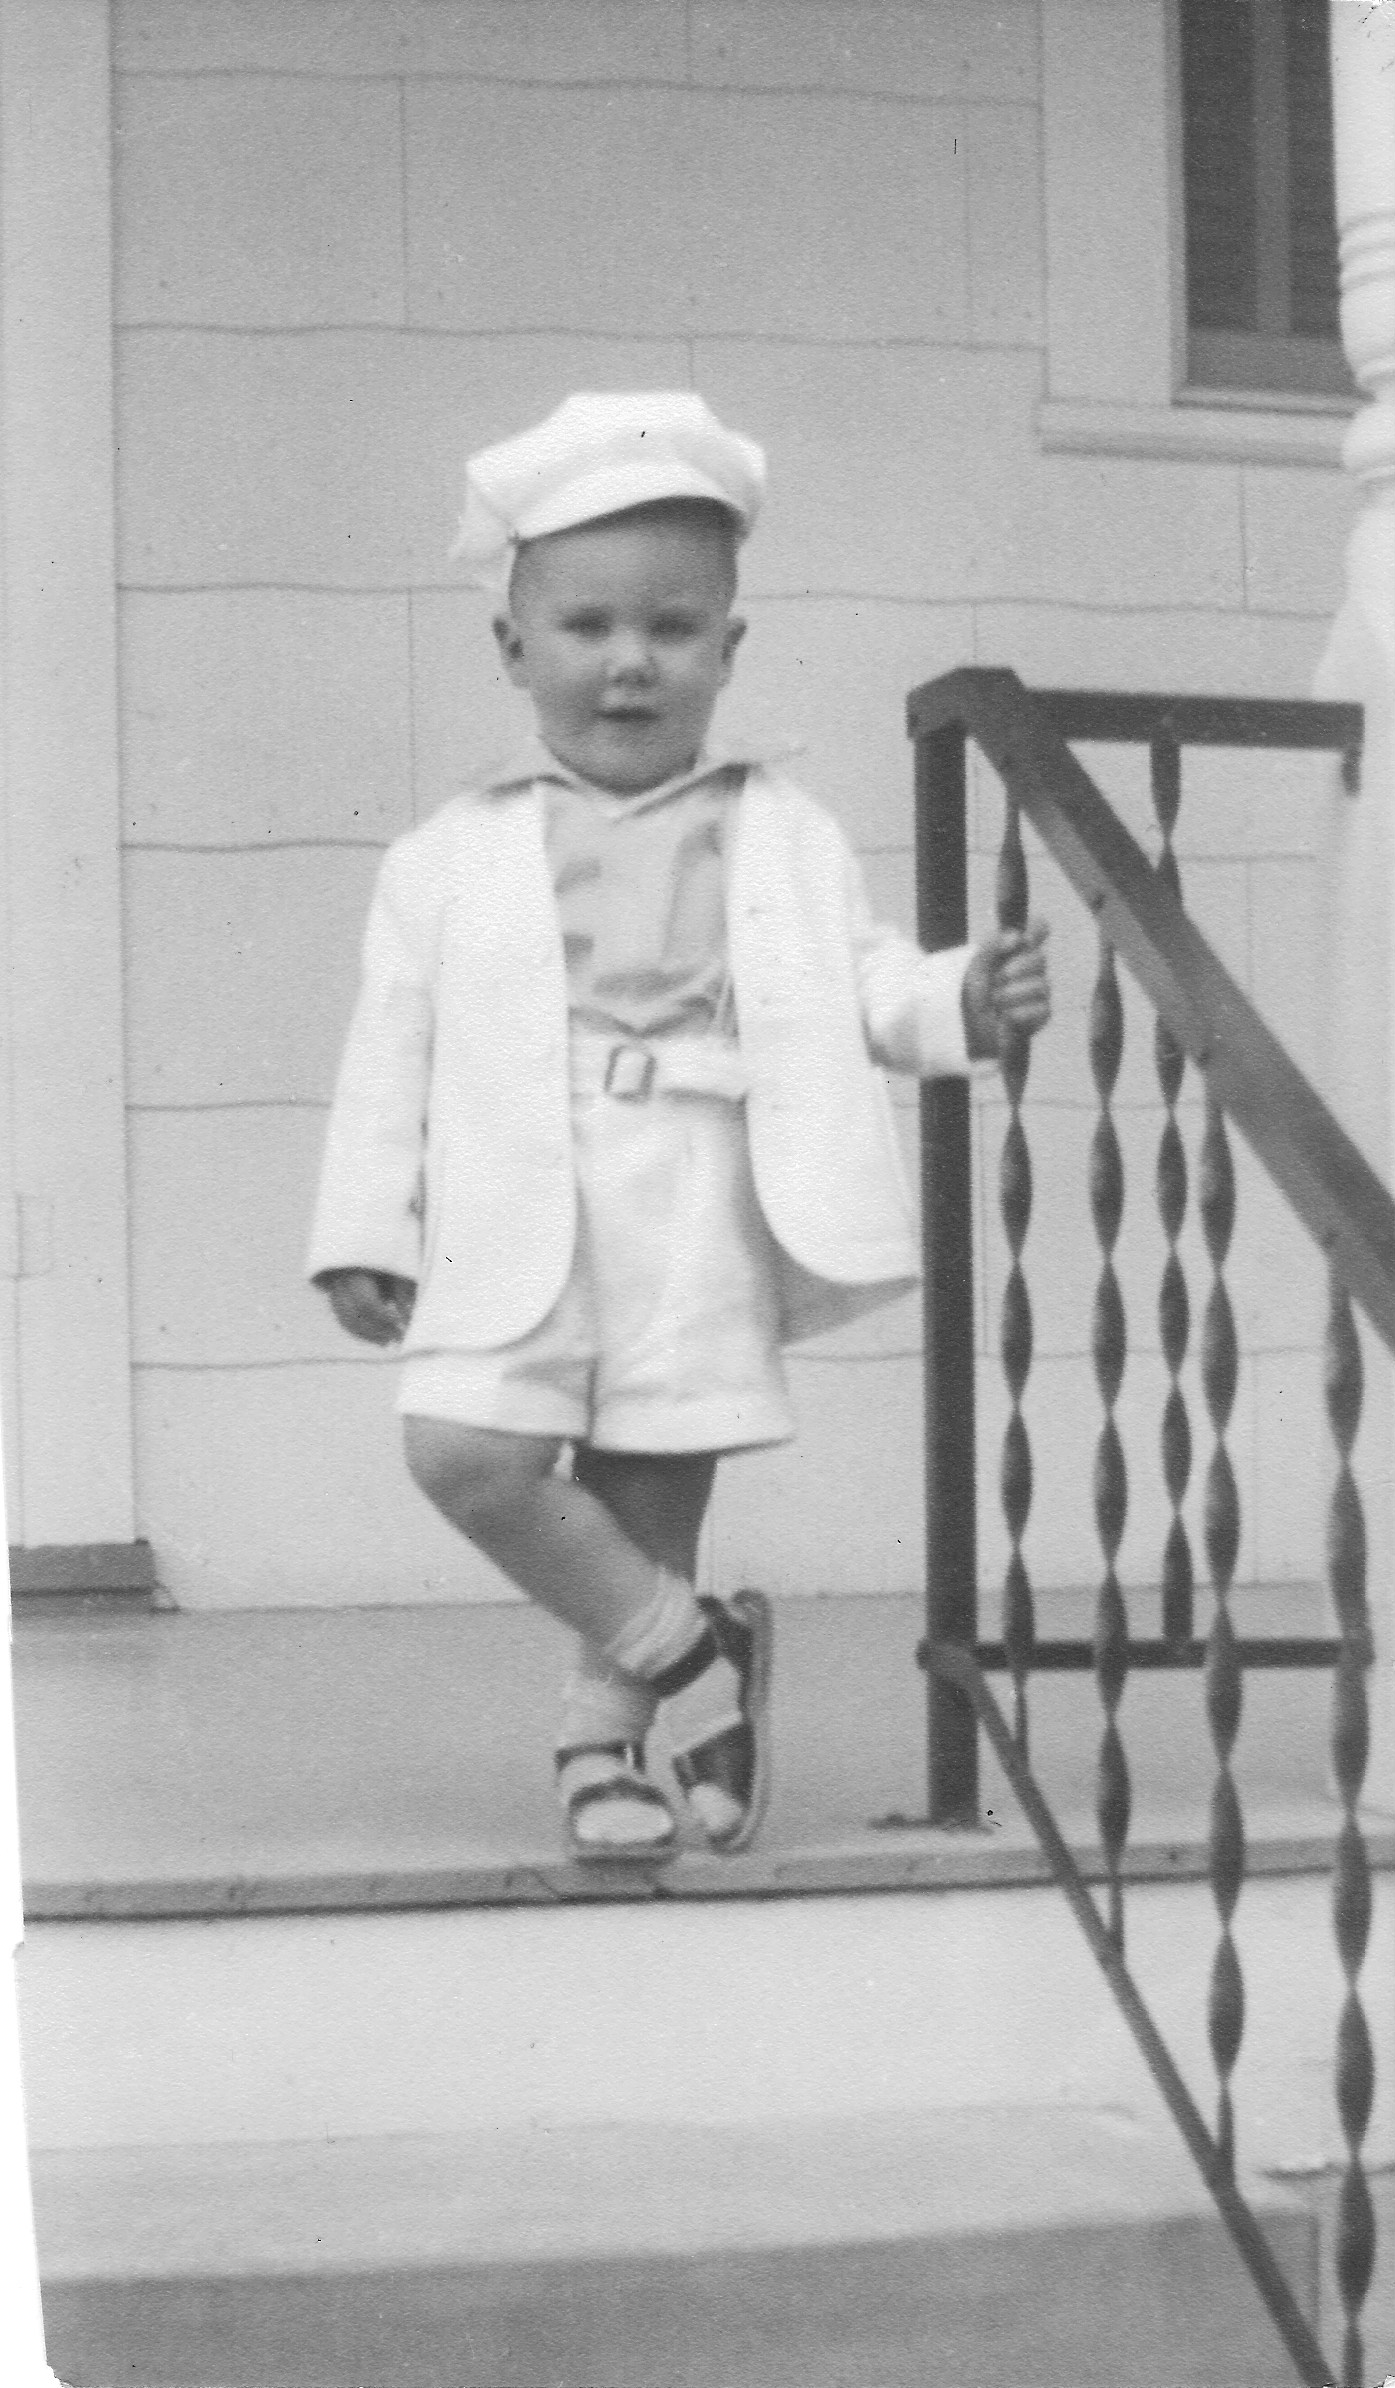 John at age 2, 1949.